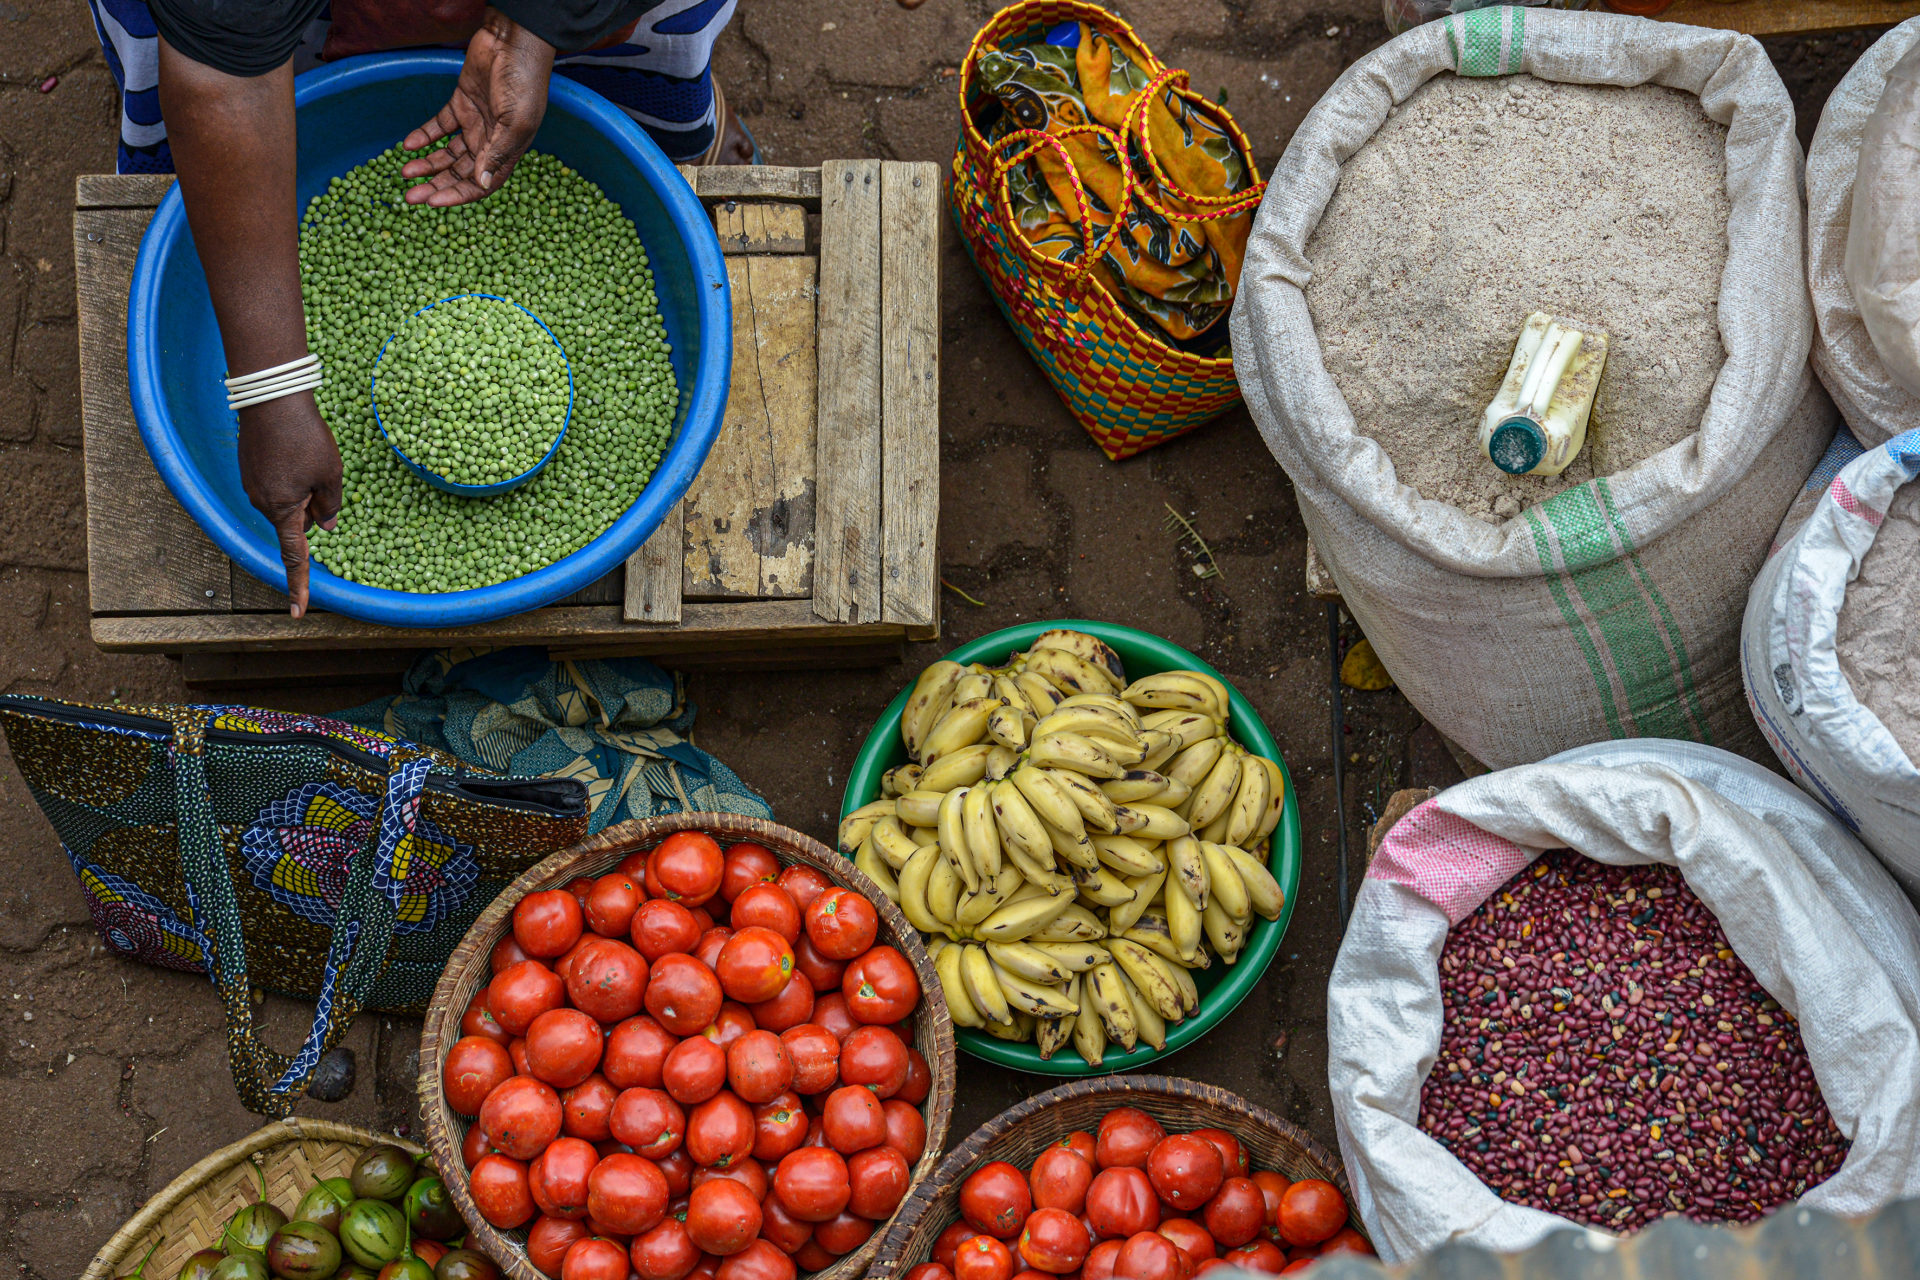 A,woman,selling,fruit,in,the,market,huye,in,rwanda.